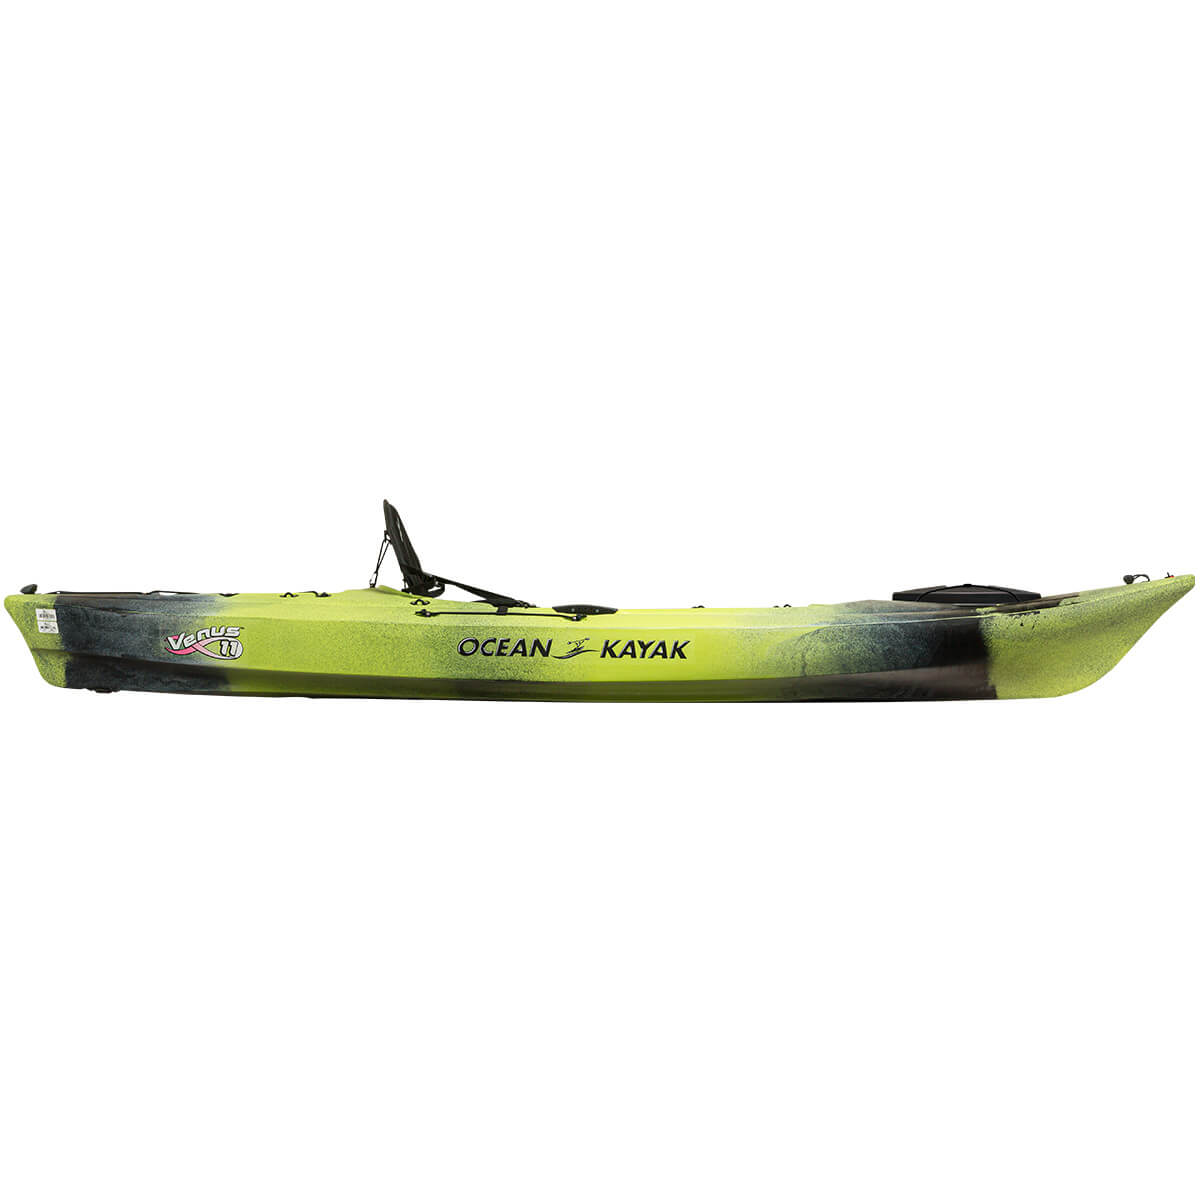 🛶 (2021) Ocean Kayak Venus 11 // Review, Availability and